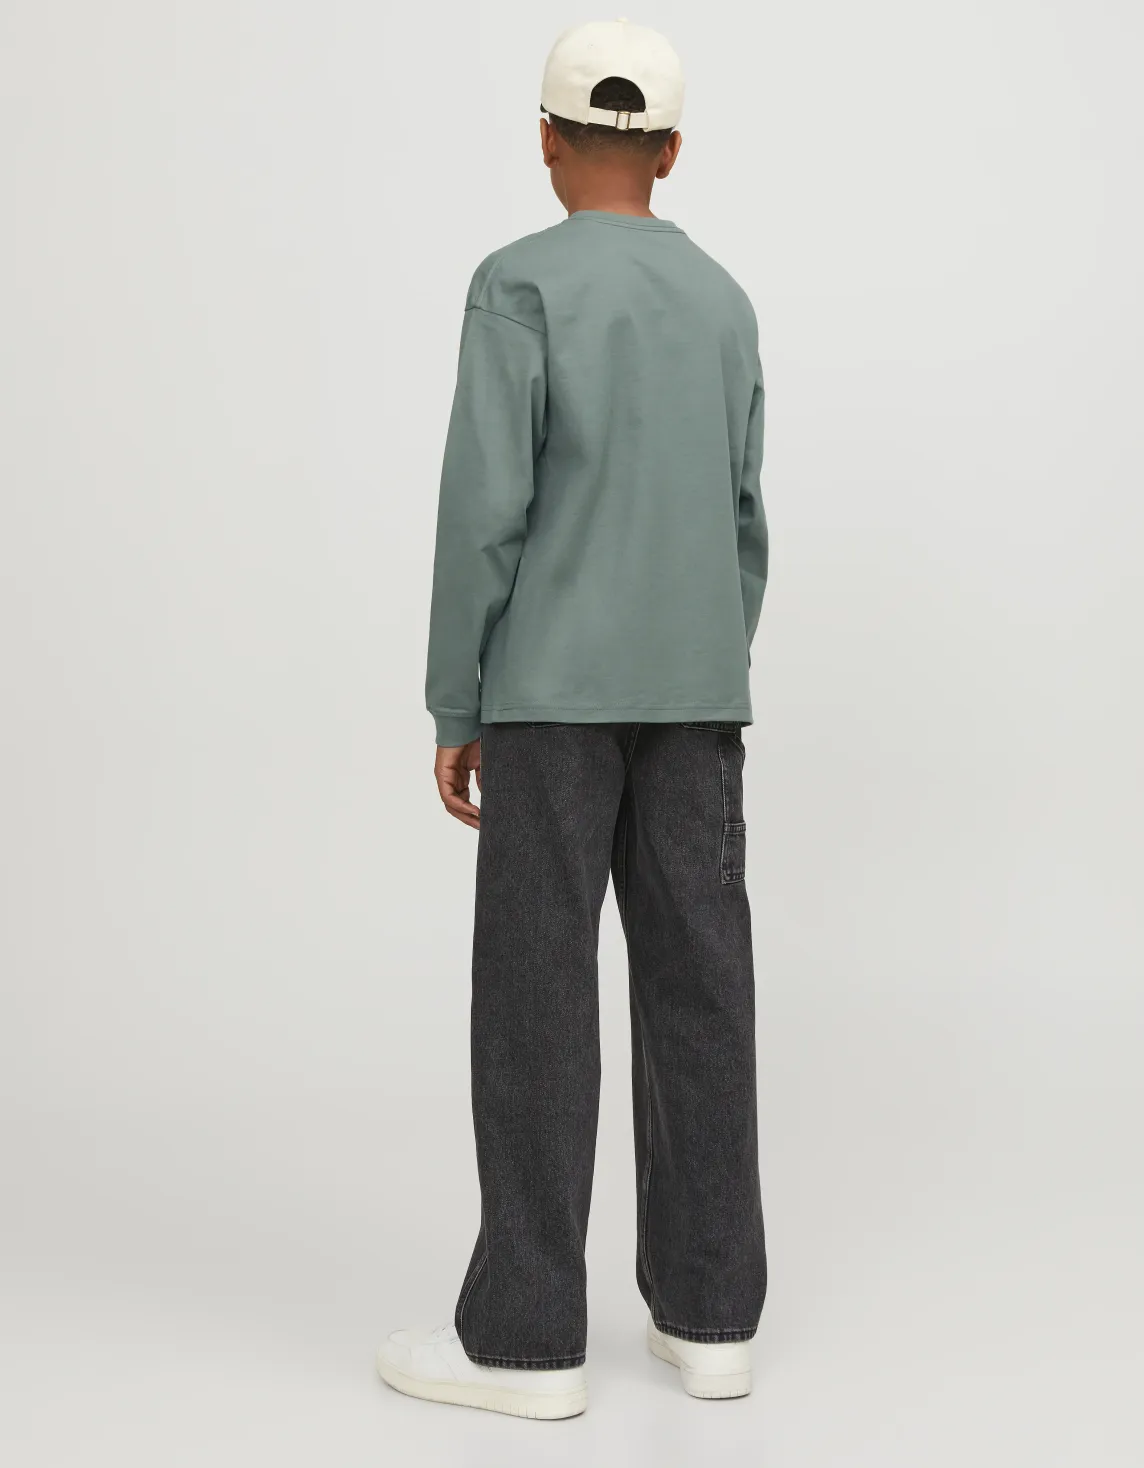 Çocuk Uzun Kollu Baskılı Tişört - Vesterbro Yeşil